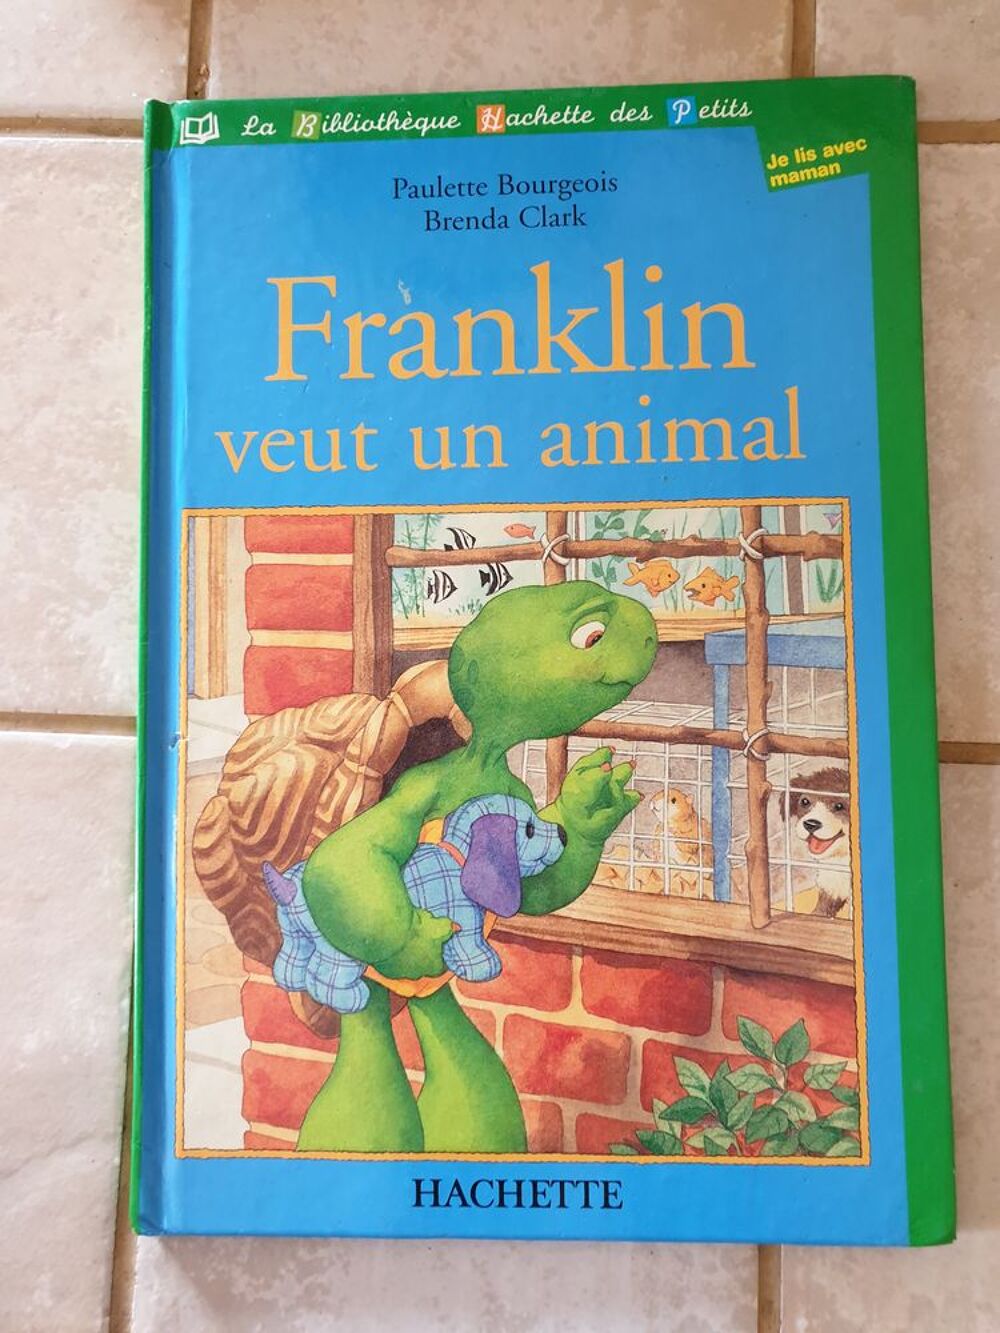 Franklin Veut Un Animal - paulette bourgeois - 1 euro Livres et BD